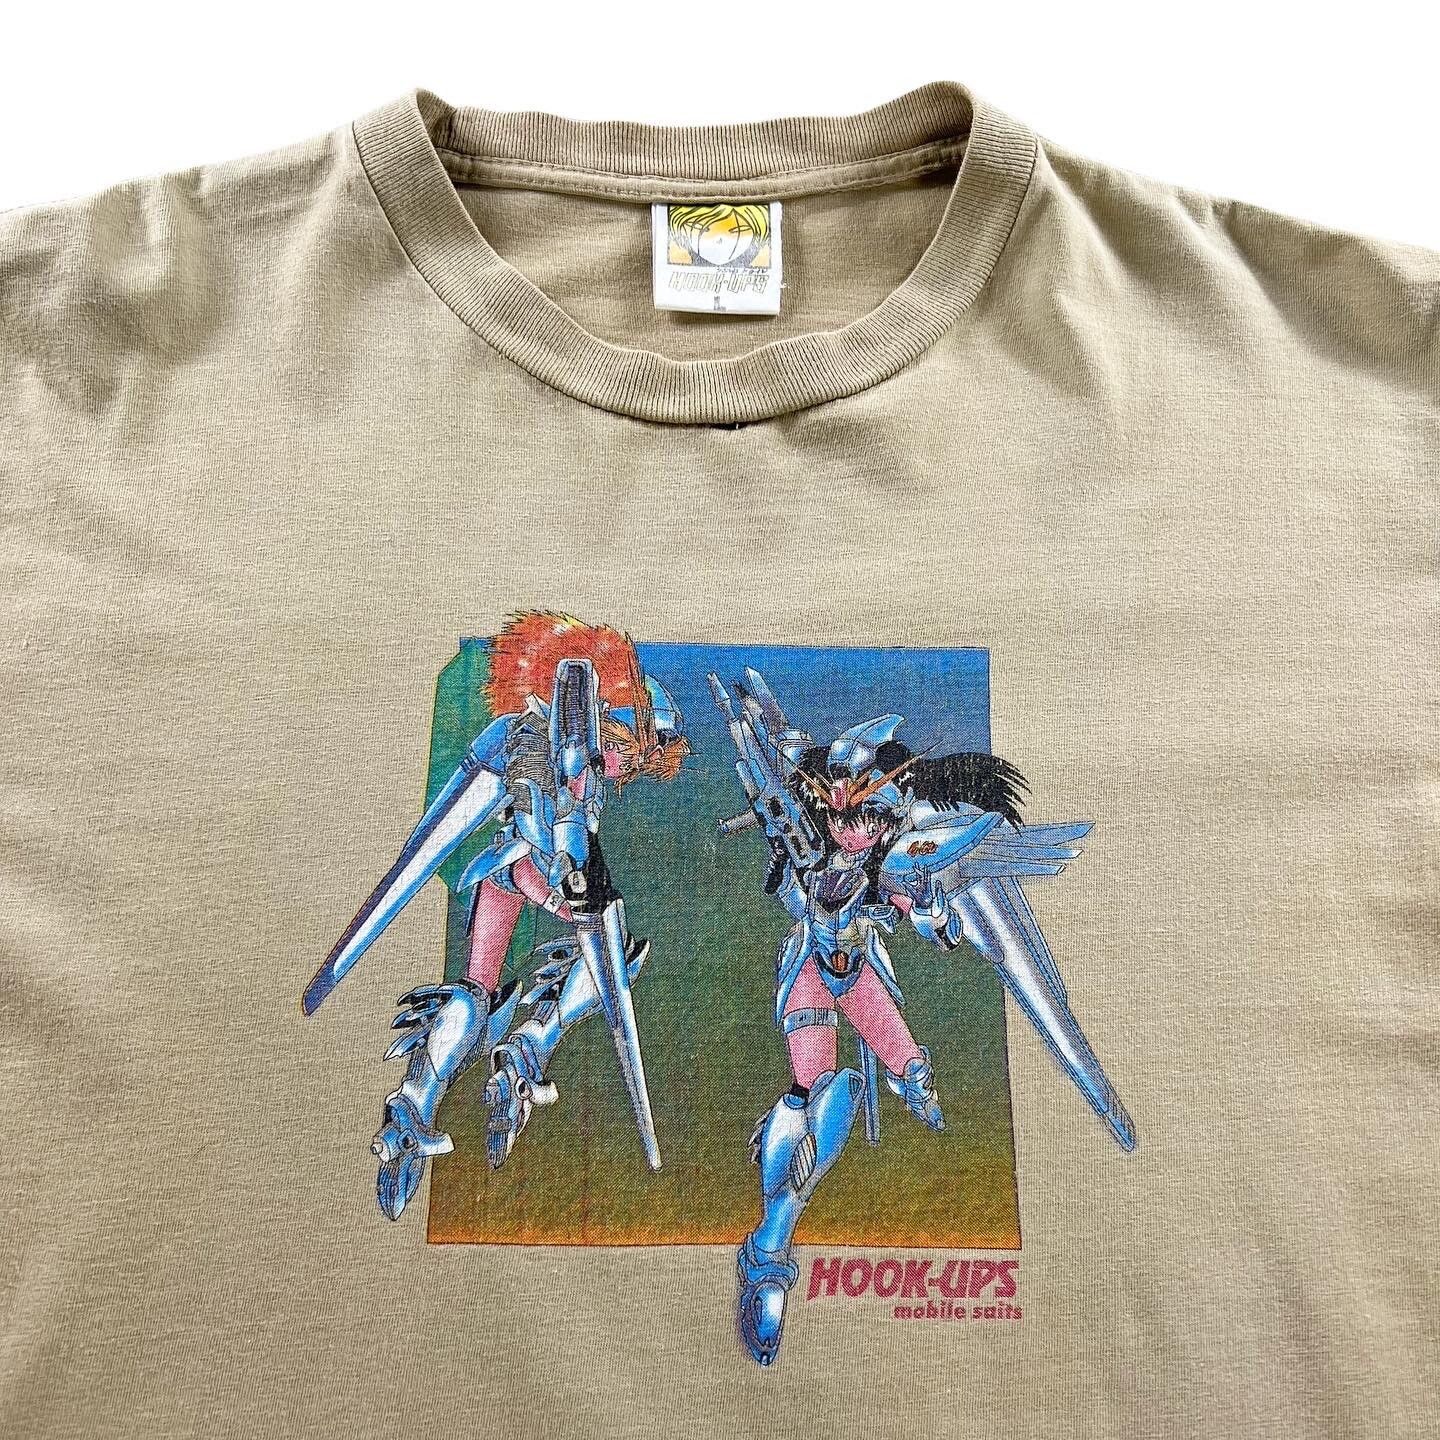 Vintage 90's Vintage Hook-Ups Skate Mobile Suits Anime T-Shirt